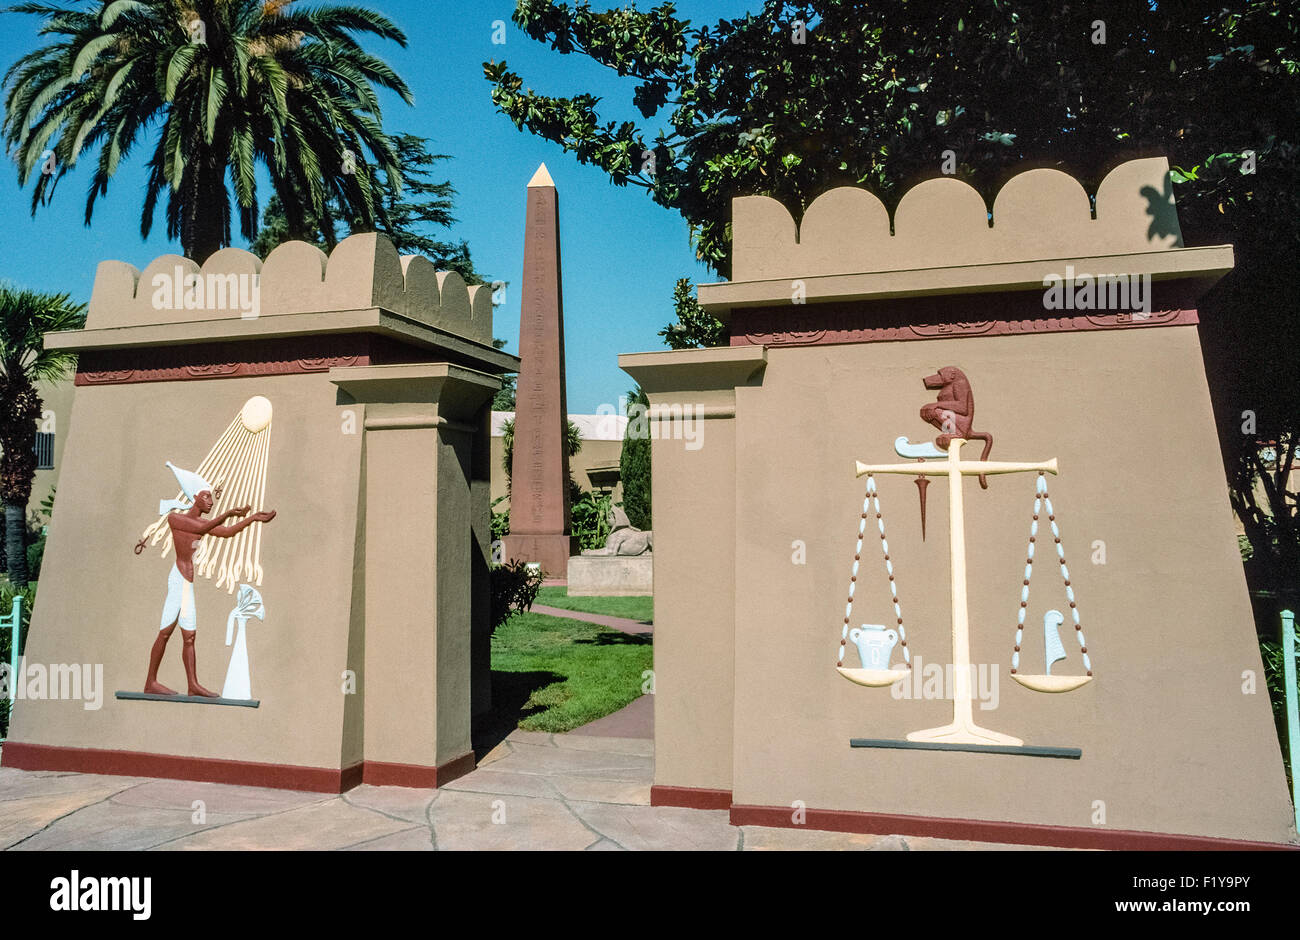 Mehr als 4.000 Artefakte aus dem alten Ägypten finden Sie auf dieser Grundlage in der Rosenkreuzer Ägyptisches Museum in San Jose, Kalifornien, USA untergebracht. Die Sammlung ist die größte im westlichen Nordamerika und wurde in den 1920er Jahren von H. Spencer Lewis, Gründer von der alten mystischen Rosae Crucis (AMORC) begonnen. Die Artefakte sind in einem Gebäude der alten ägyptischen Architektur angezeigt, die im Jahre 1966 eröffnet wurde. Stockfoto